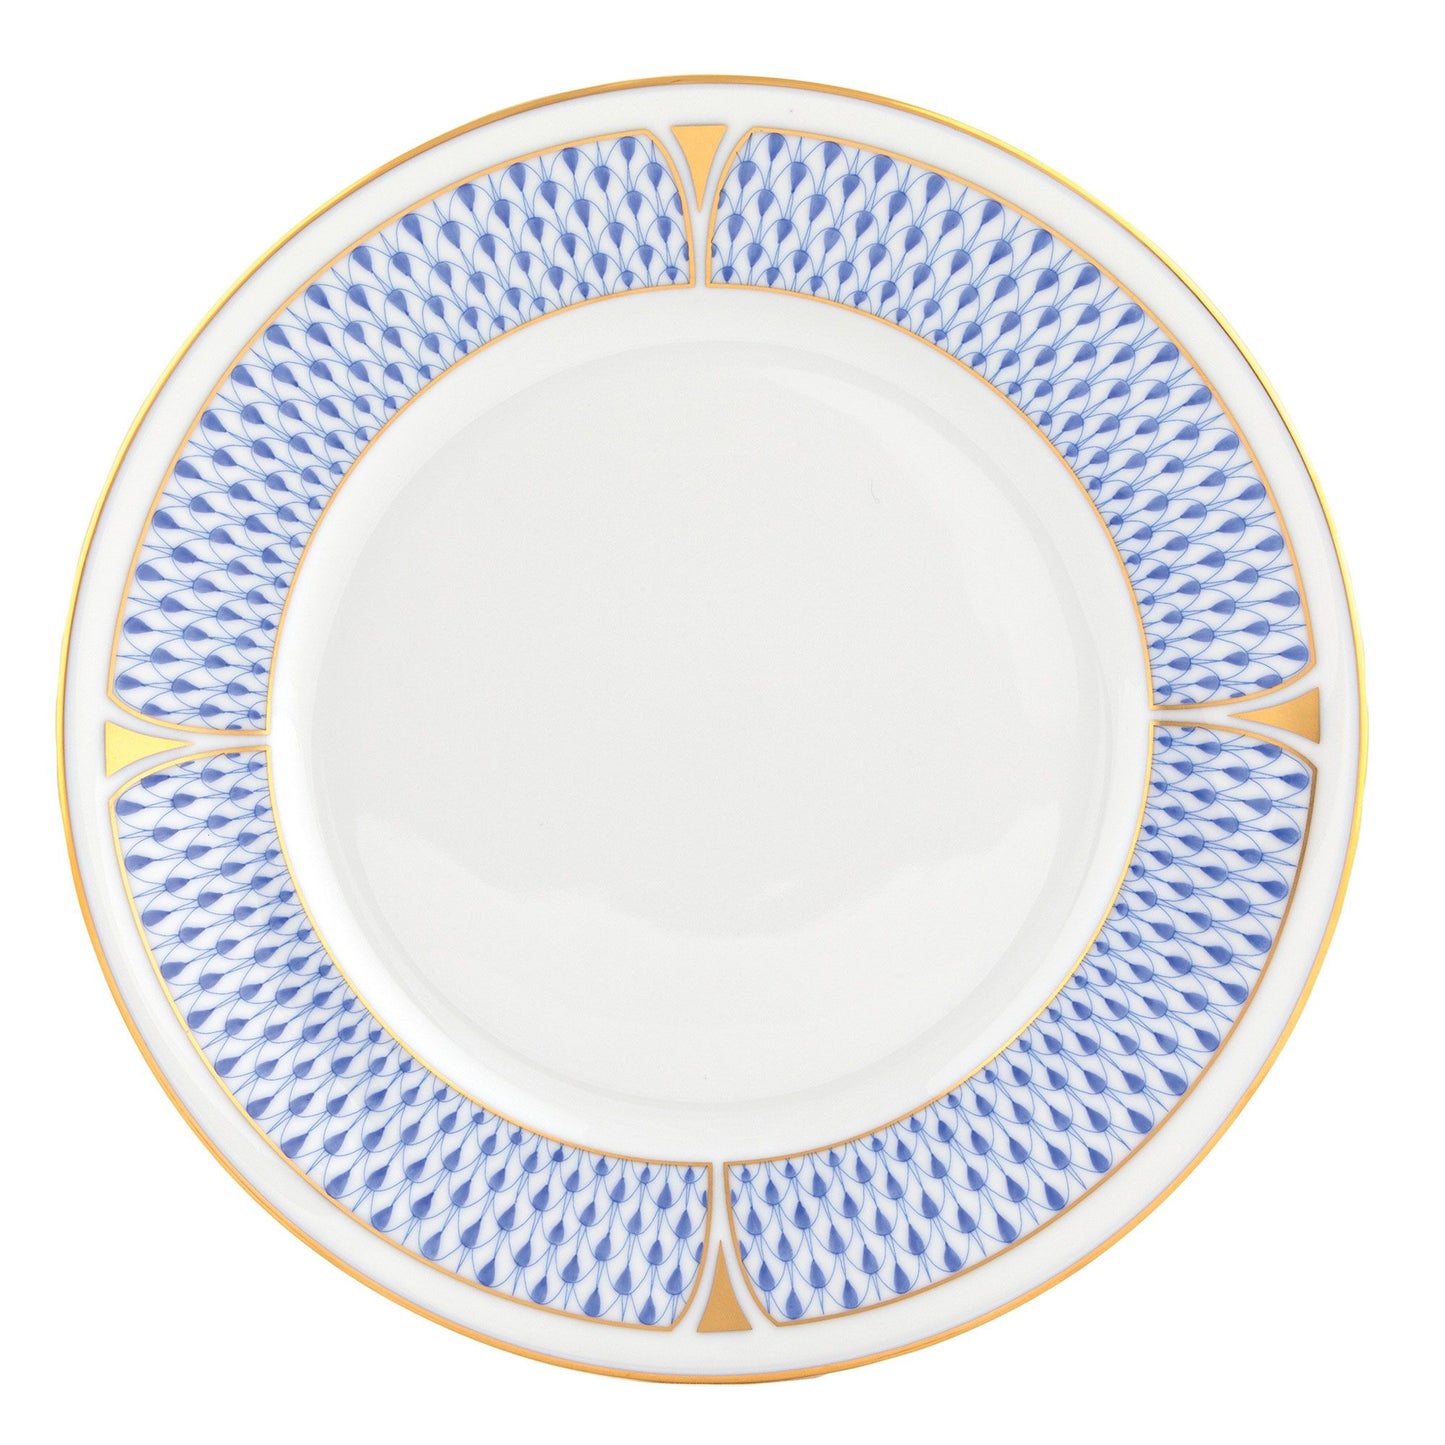 Herend Art Deco Blue Dessert Plate